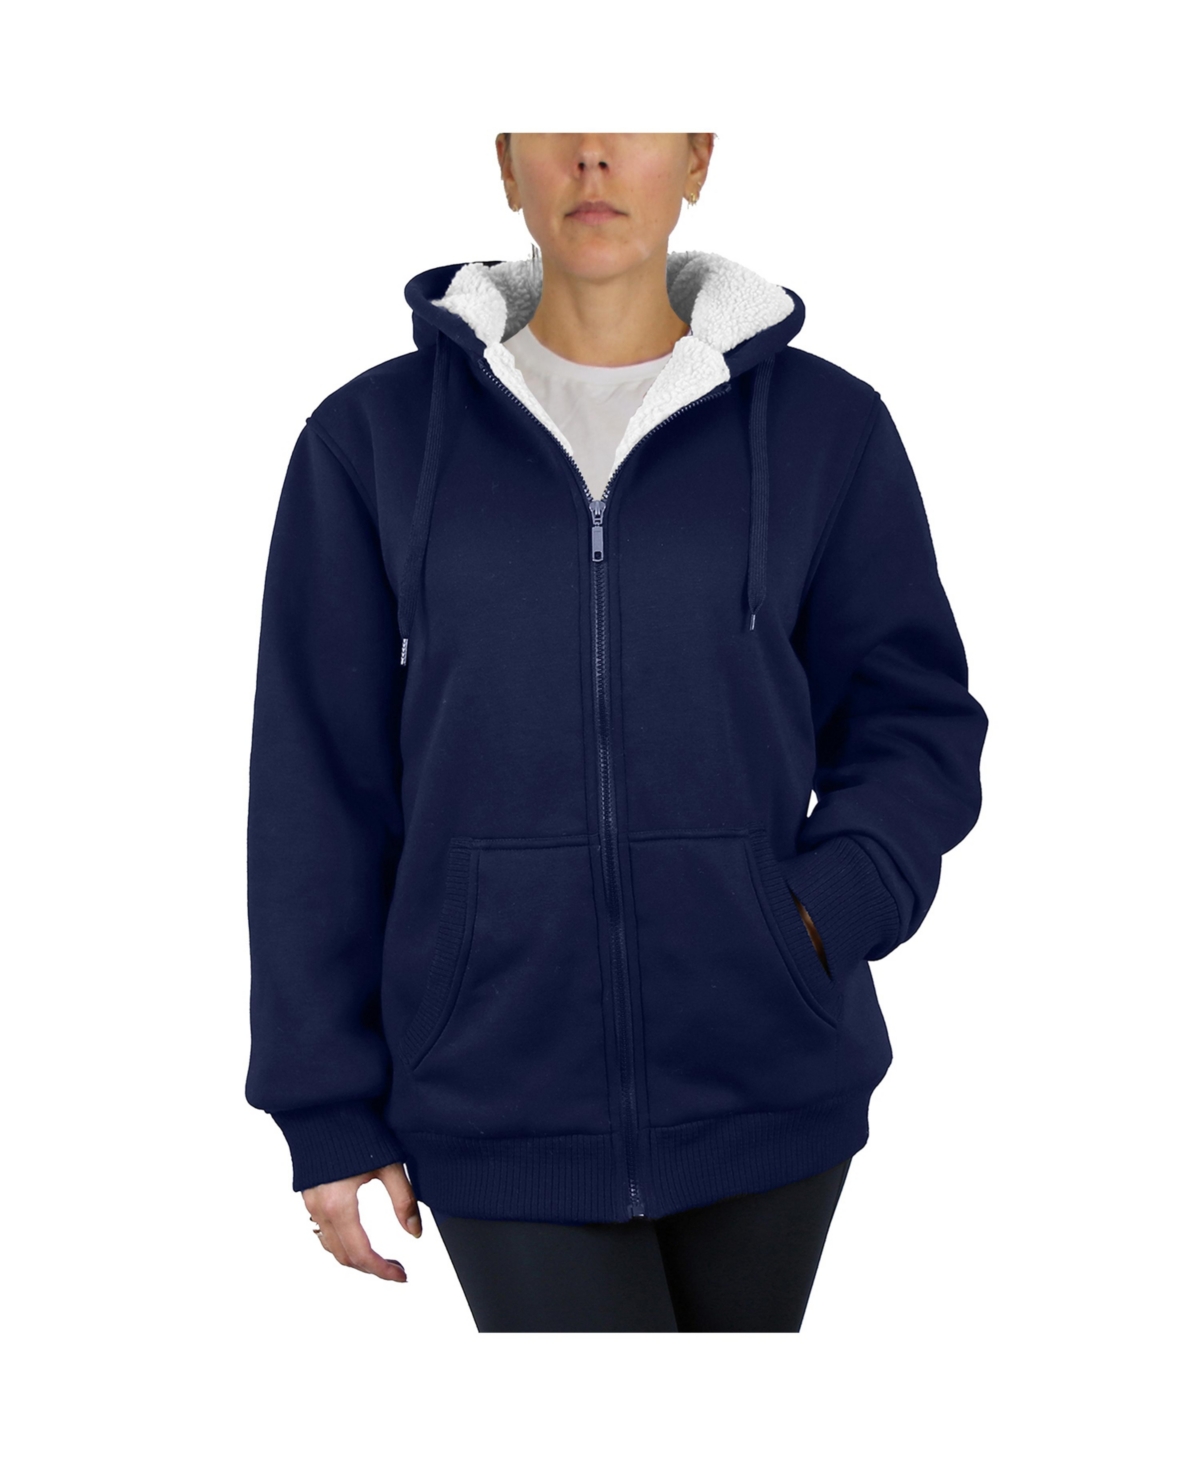 Women's Loose Fit Sherpa Lined Fleece Zip-Up Hoodie Sweatshirt - Navy